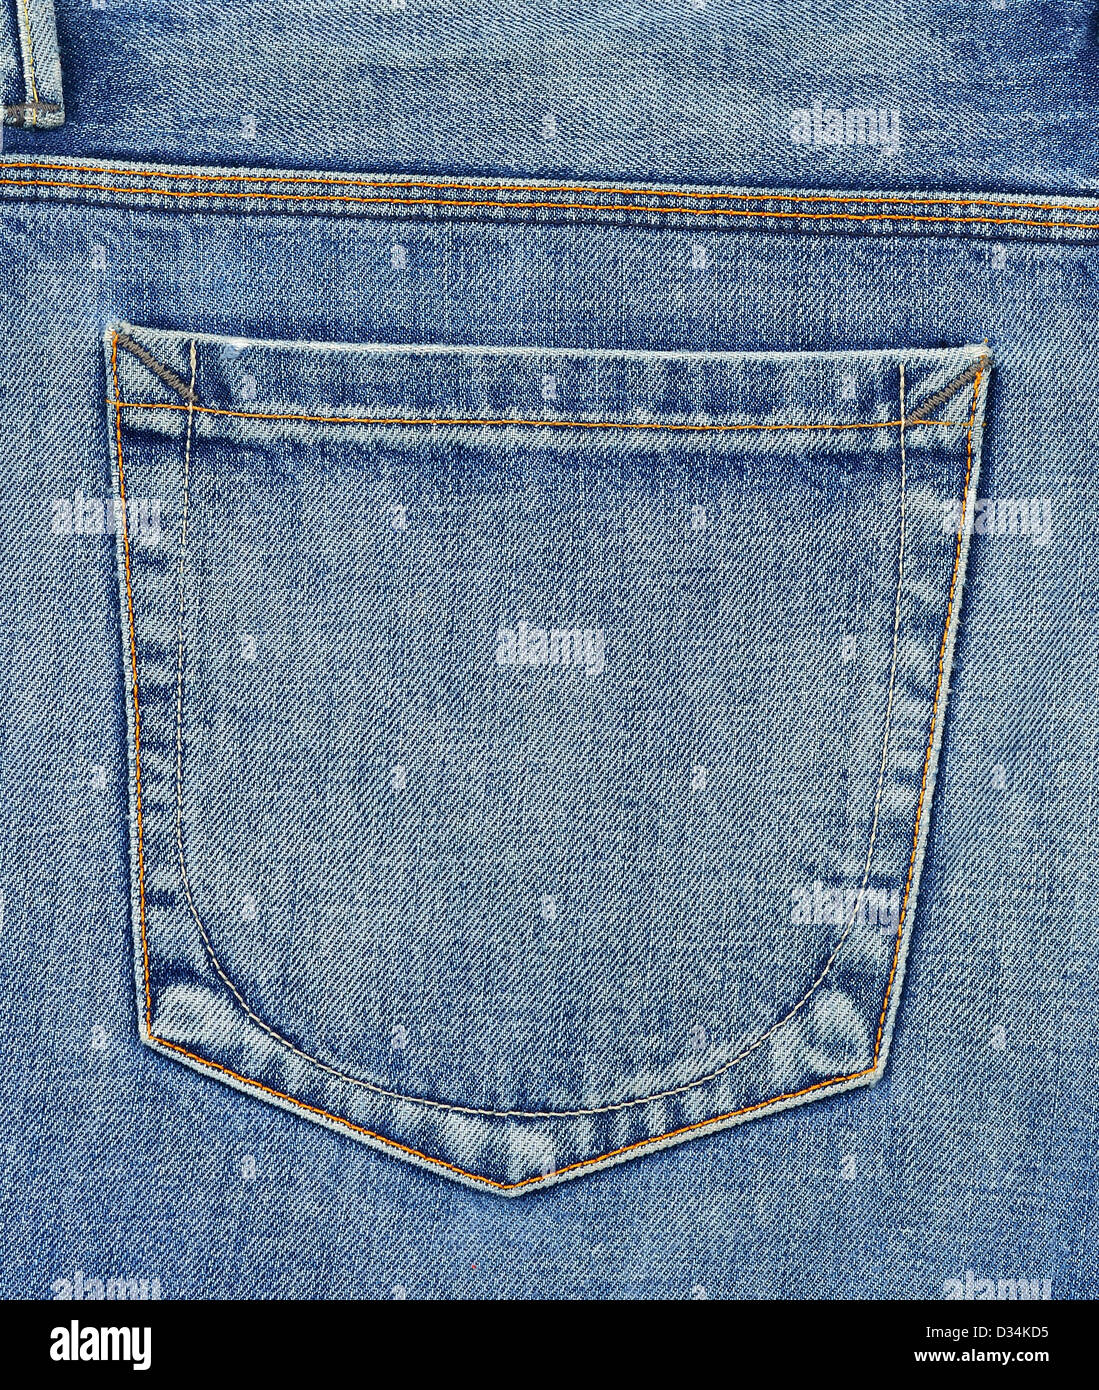 Vide poche arrière de jeans Banque D'Images